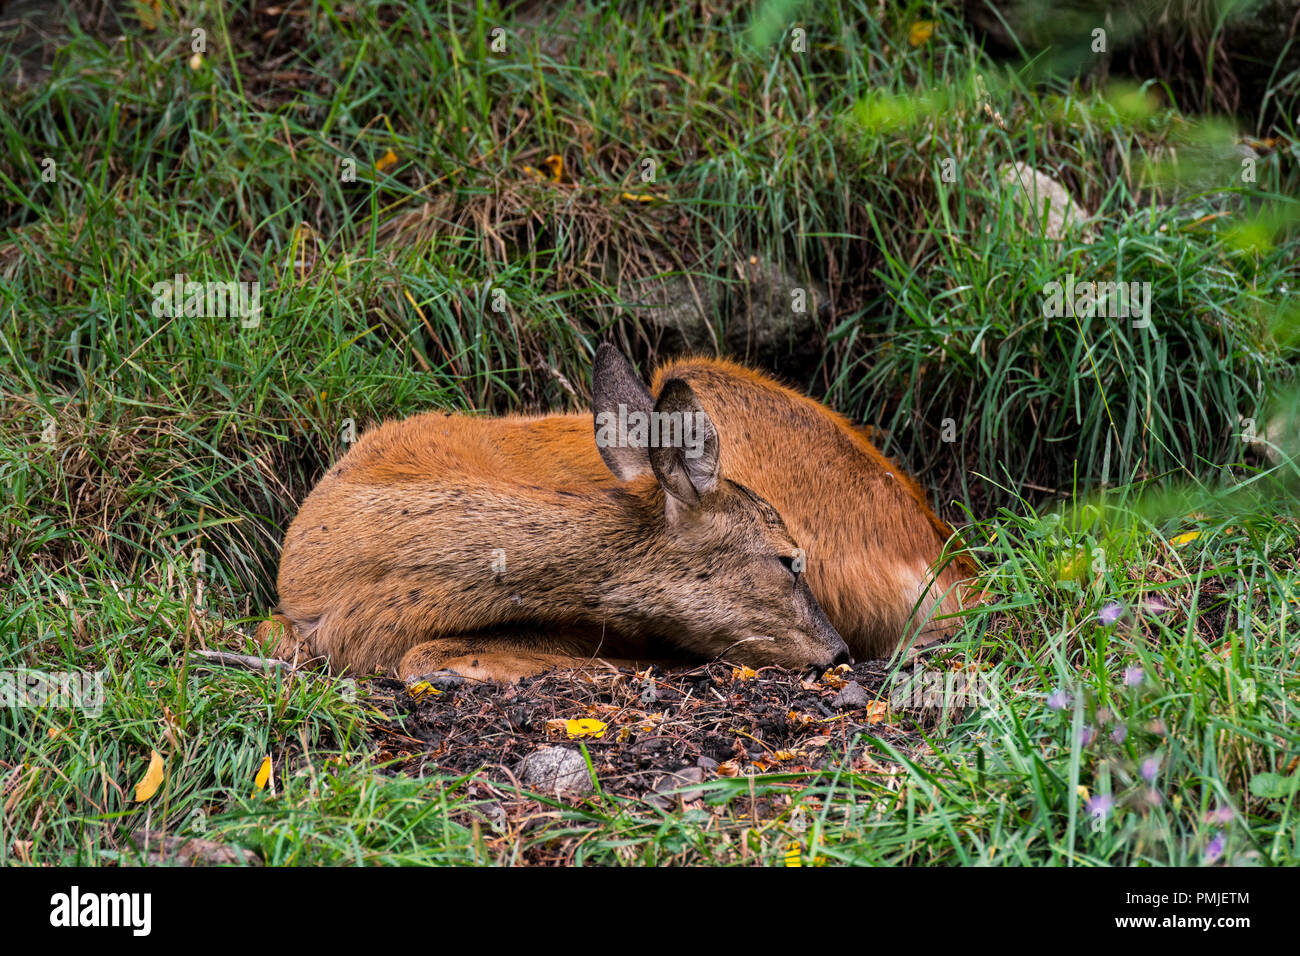 Unión corzo (Capreolus capreolus) hembra / doe durmiendo en los prados / pradera en verano Foto de stock